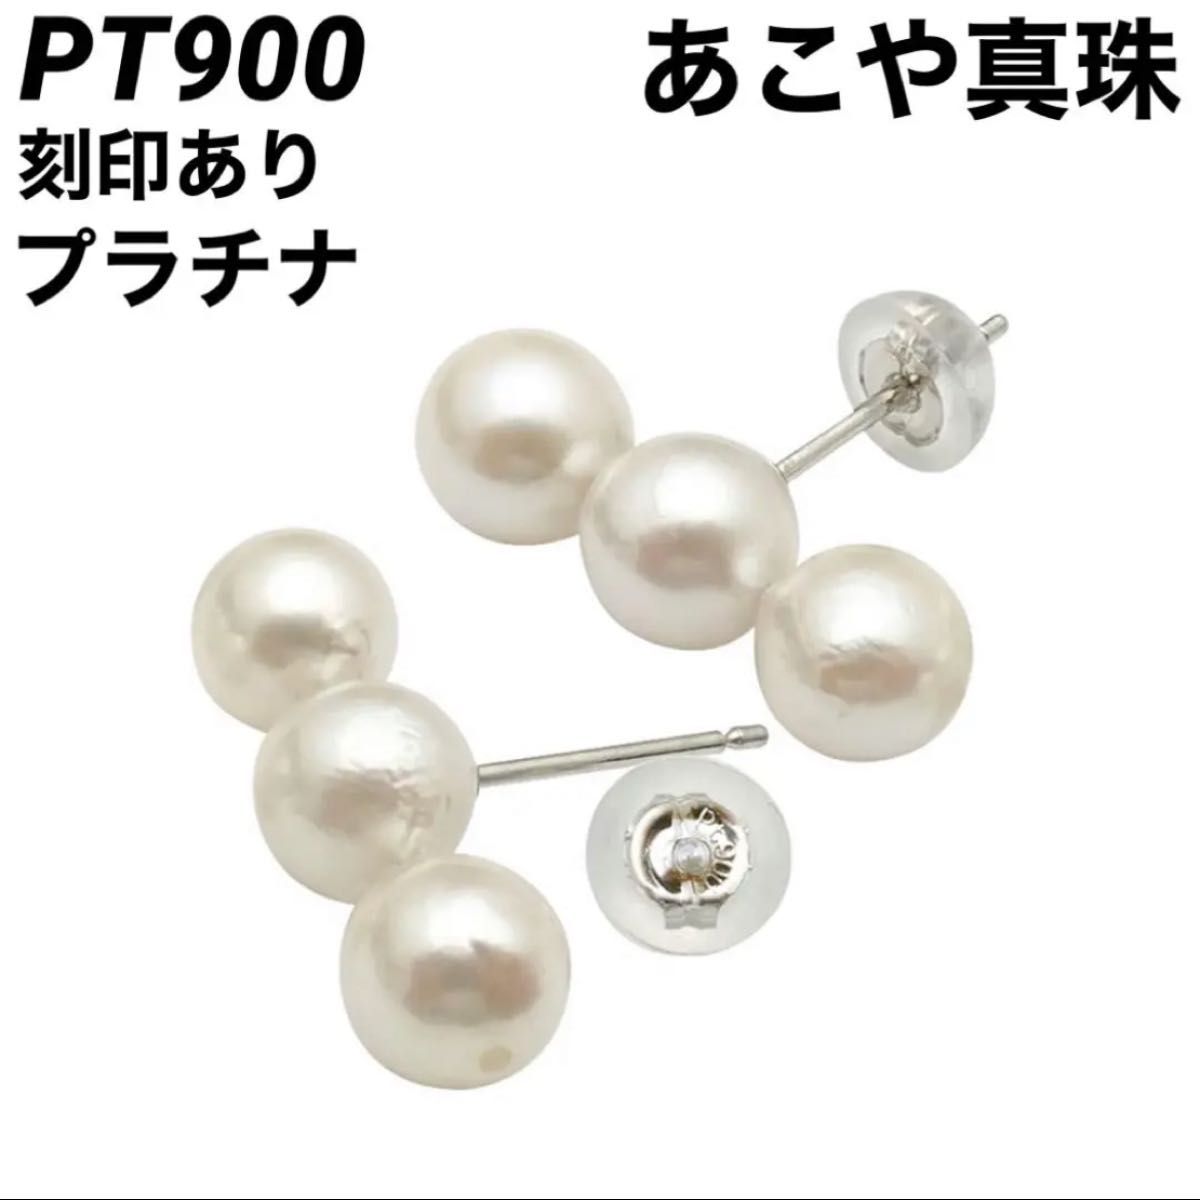 新品 PT900 あこや本真珠 プラチナ ピアス 刻印あり 上質 日本製 ペア